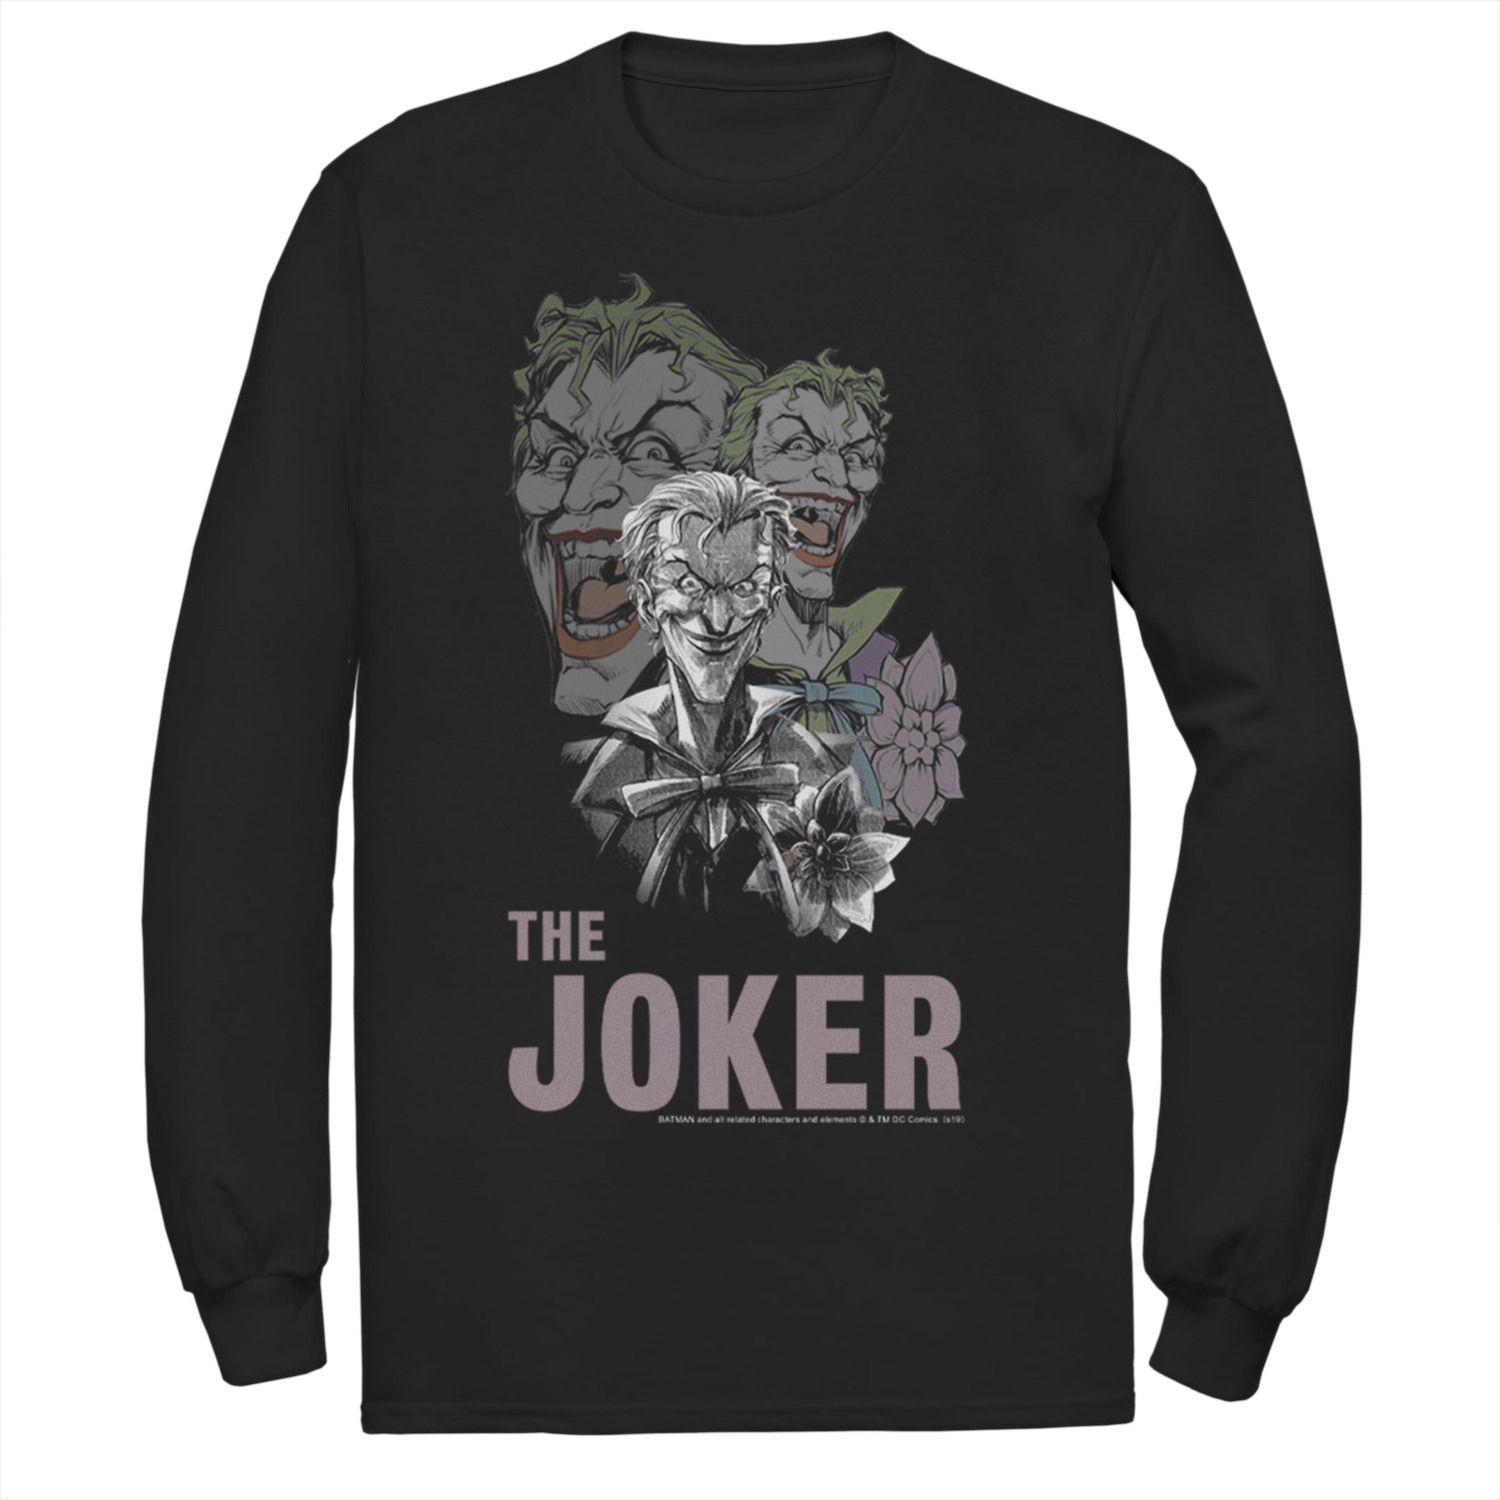 Мужская футболка с коллажем DC Comics The Joker